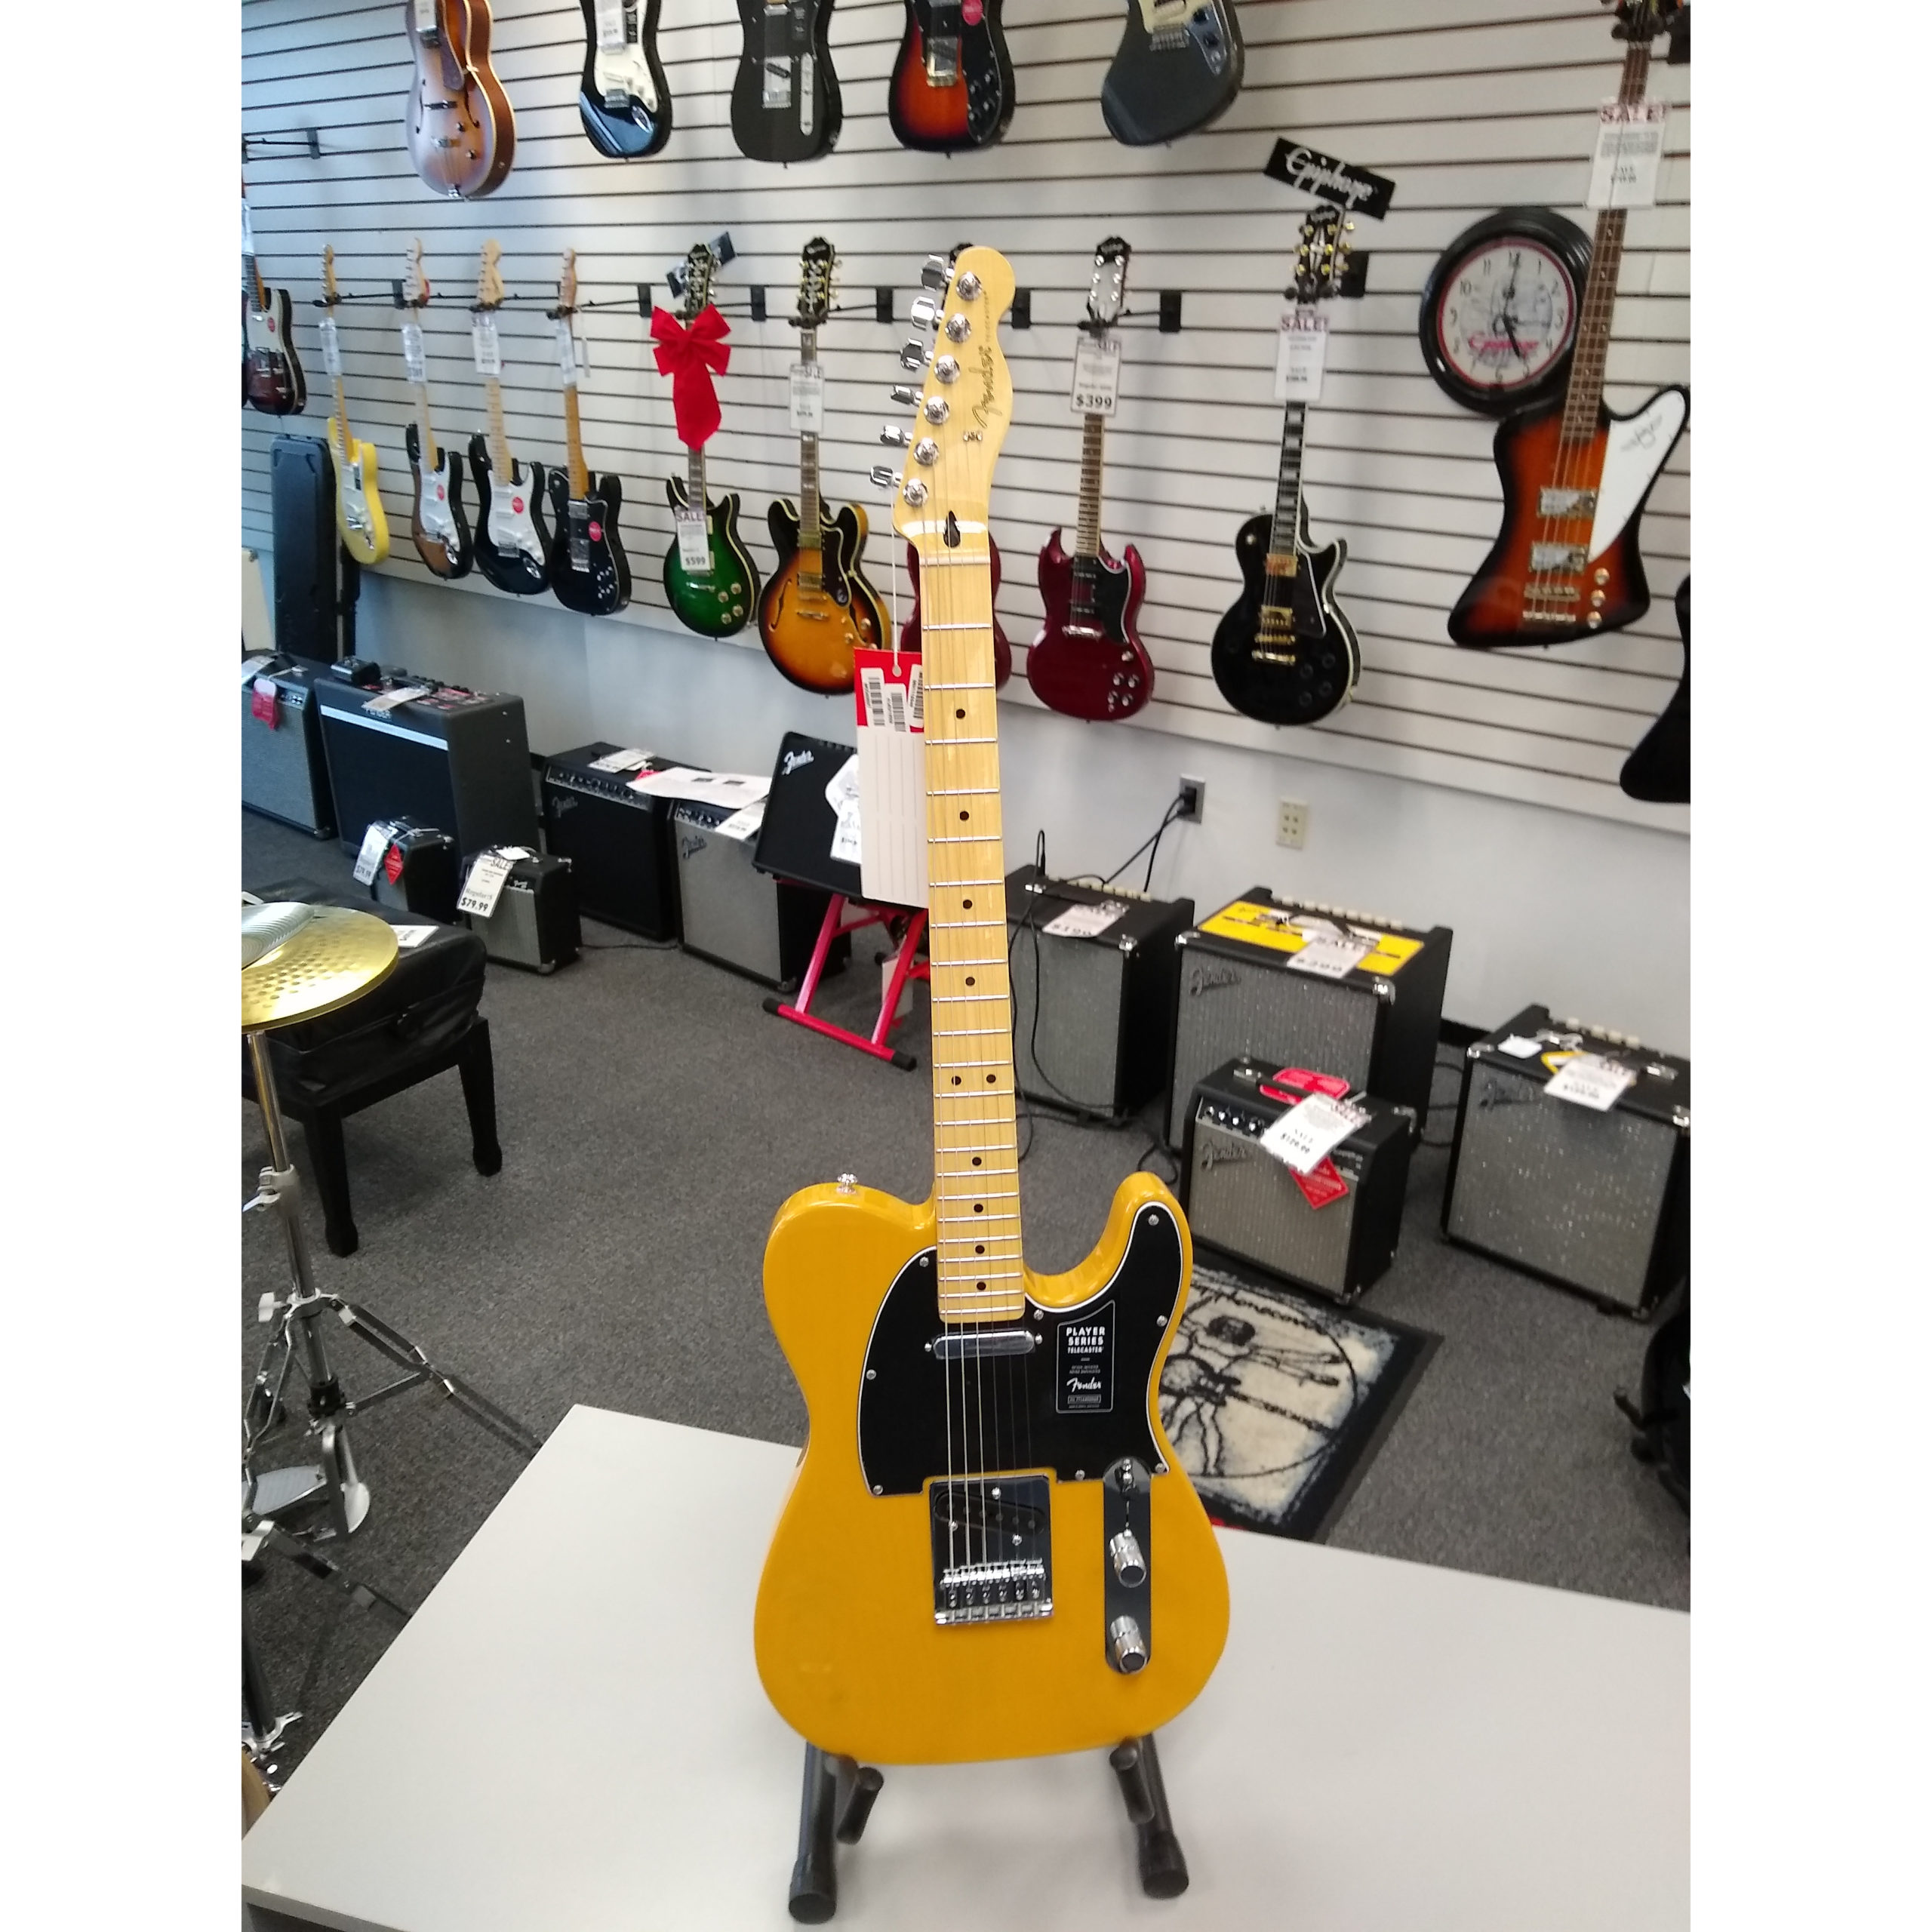 Fender Player Telecaster Butterscotch Blonde